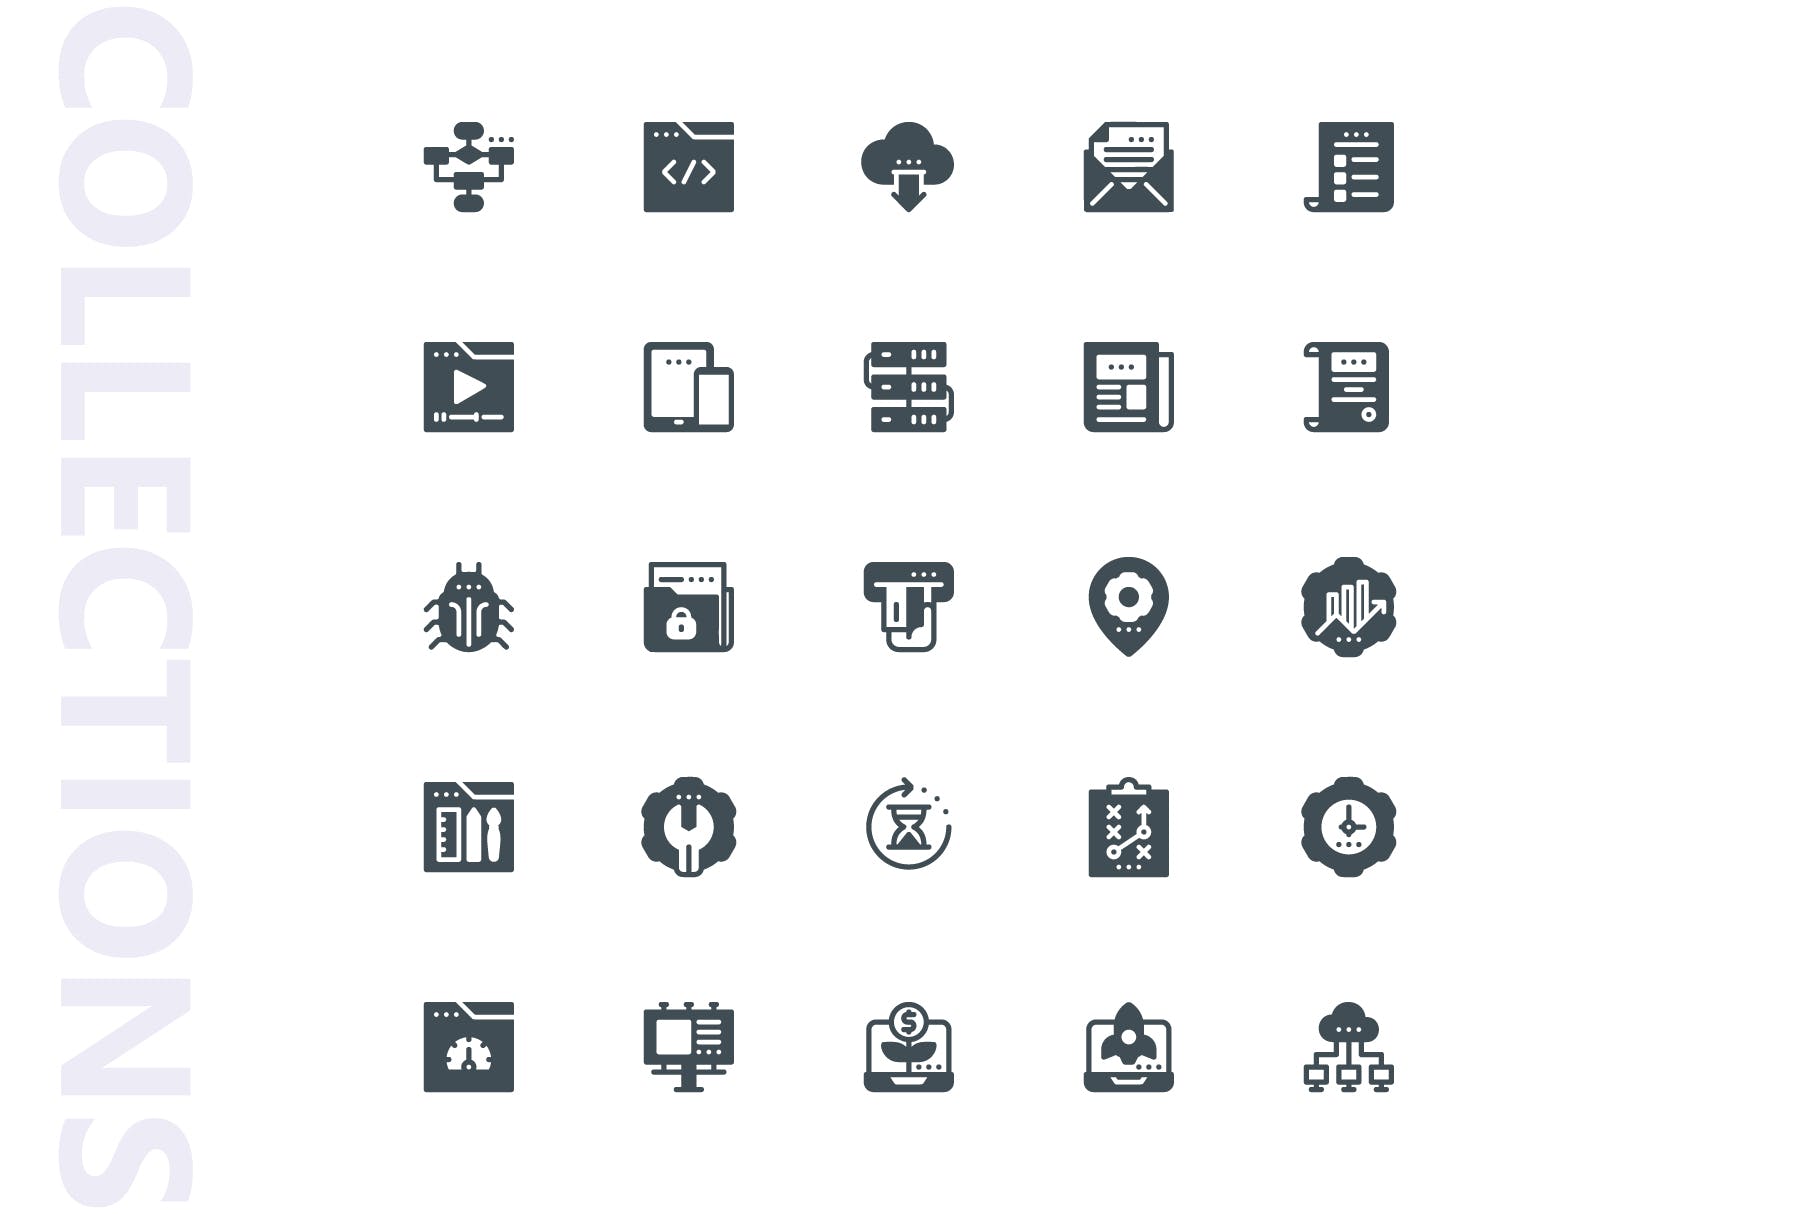 25枚SEO搜索引擎优化营销矢量字体第一素材精选图标v1 SEO Marketing Glyph Icons插图(3)